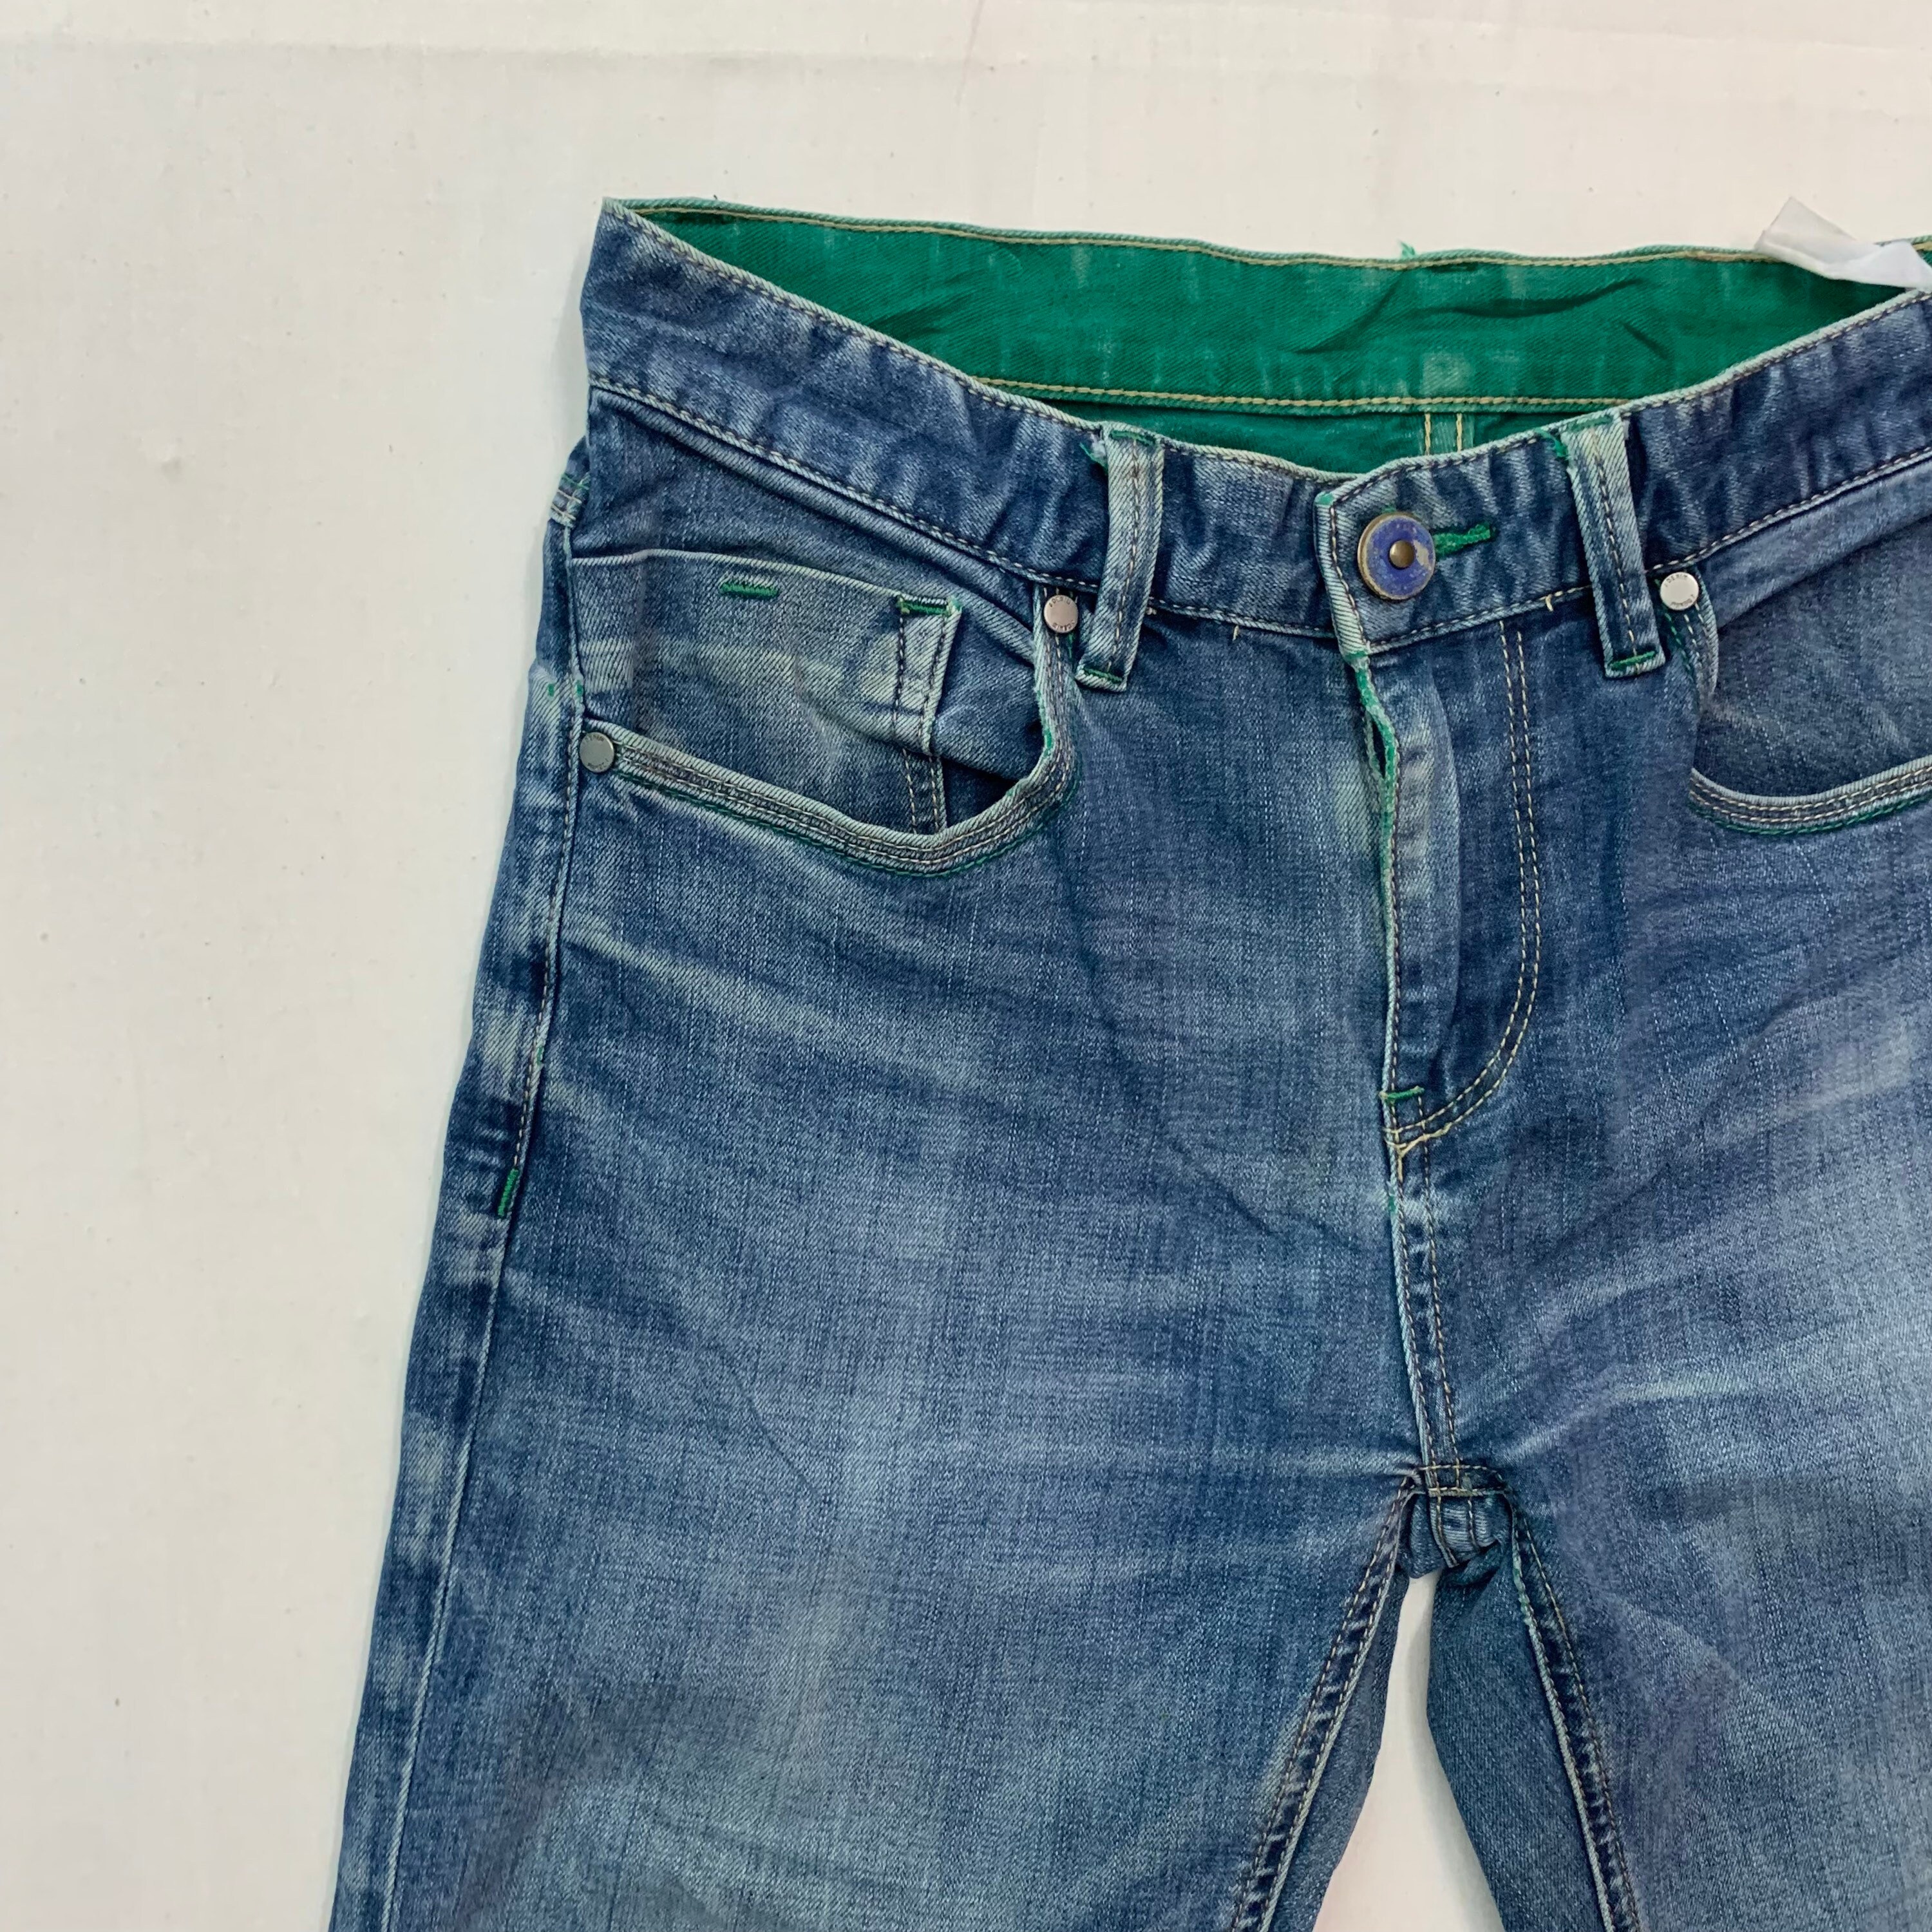 Vintage Jeanswest Green Denim Jeans Vintage Jeanswest Grenn - Etsy UK